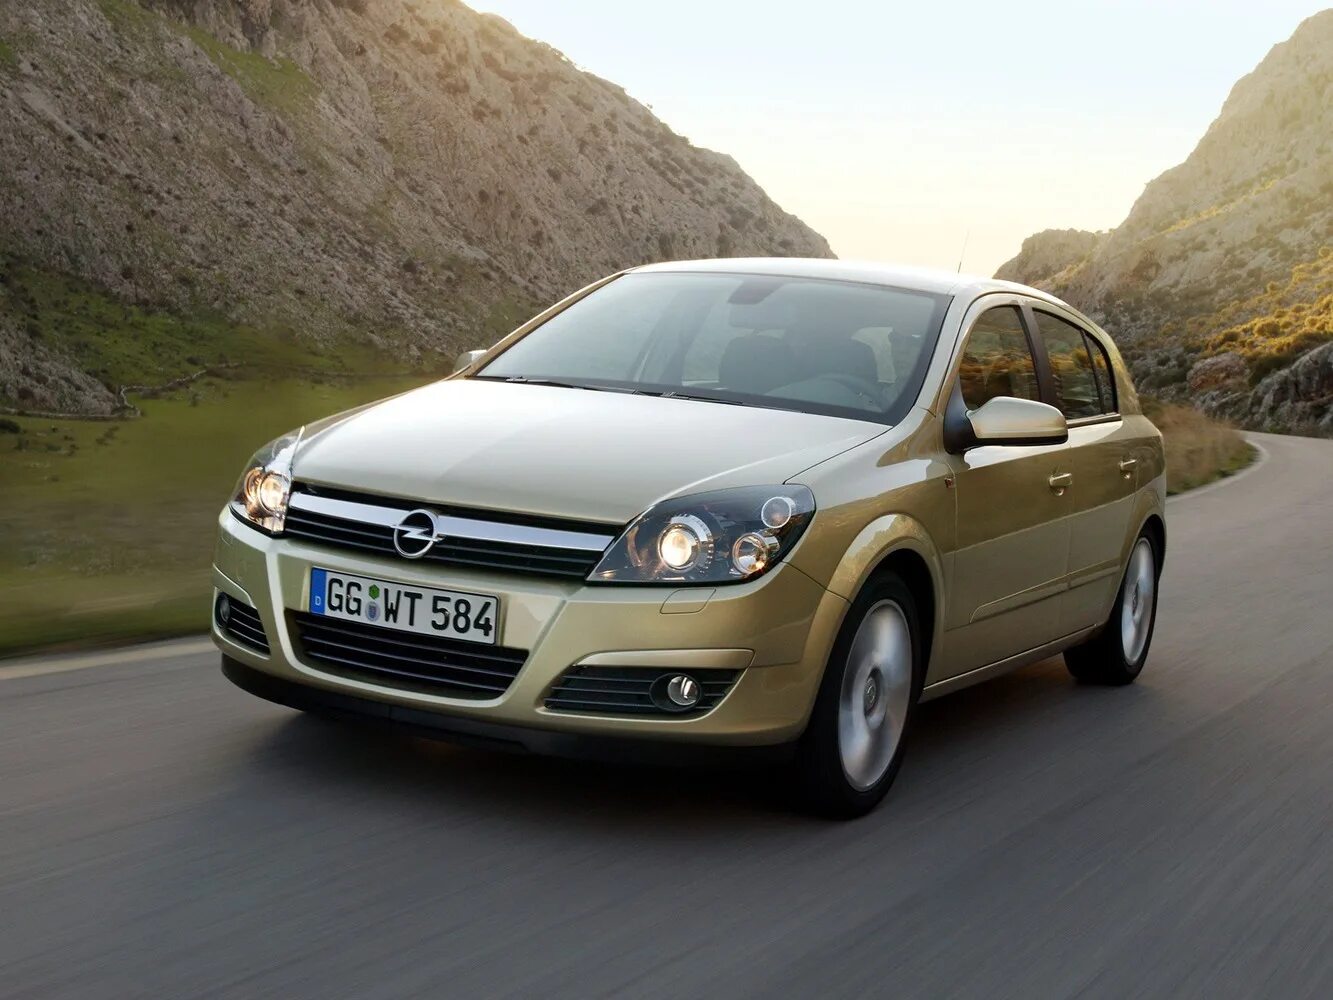 Opel Astra h 2004. Opel Astra h (2004-2007). Opel Astra h 1.6. Opel Astra 2004. Opel h 2006